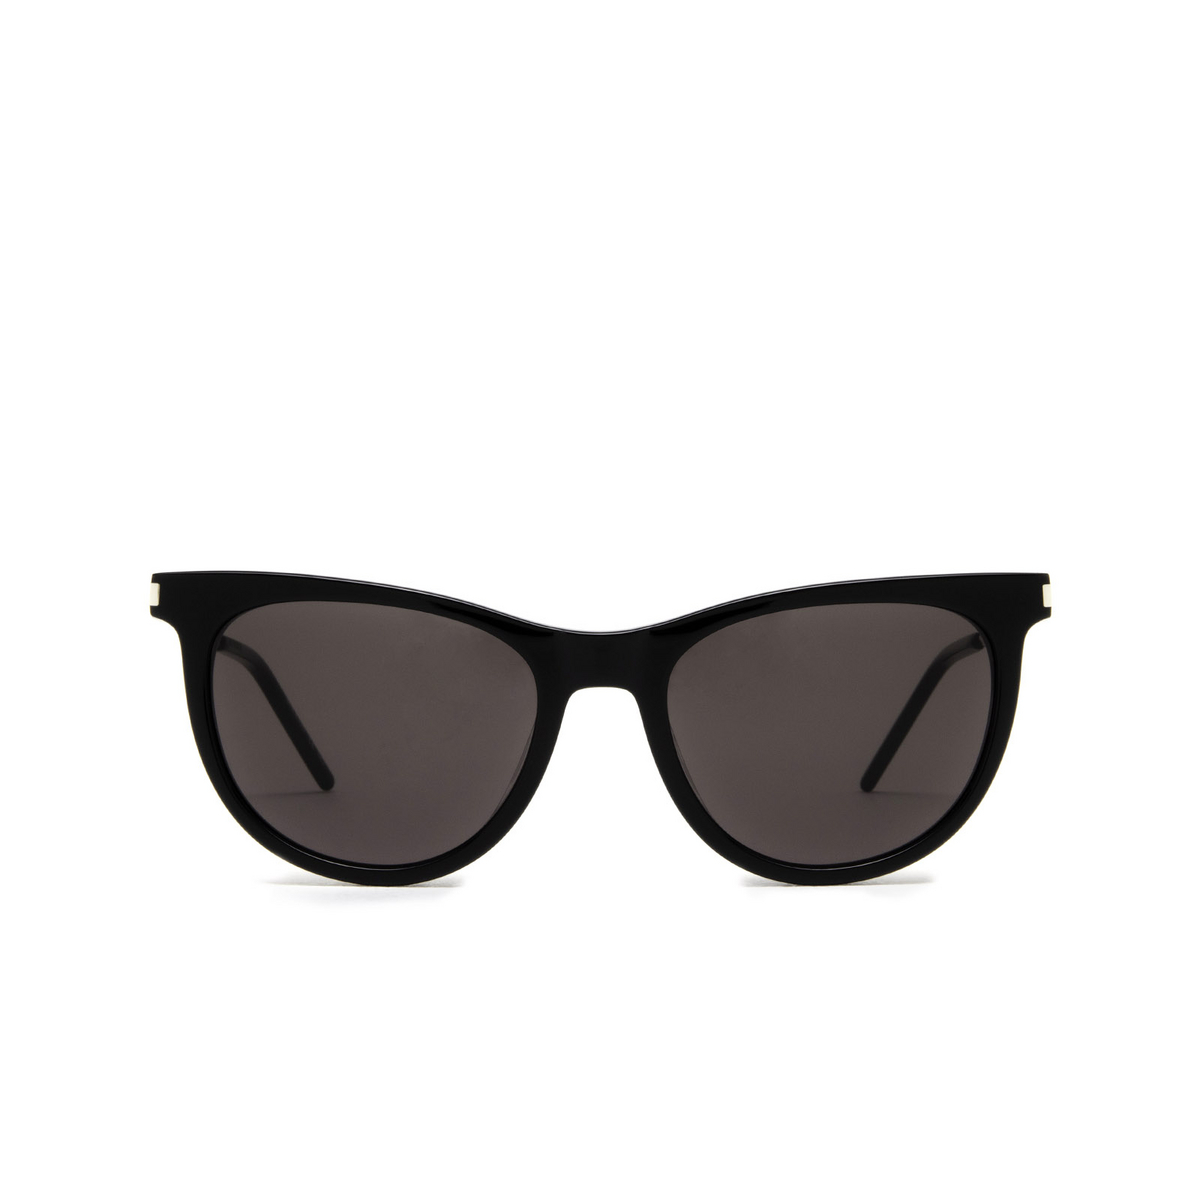 Saint Laurent SL 510 Sunglasses 001 Black - front view